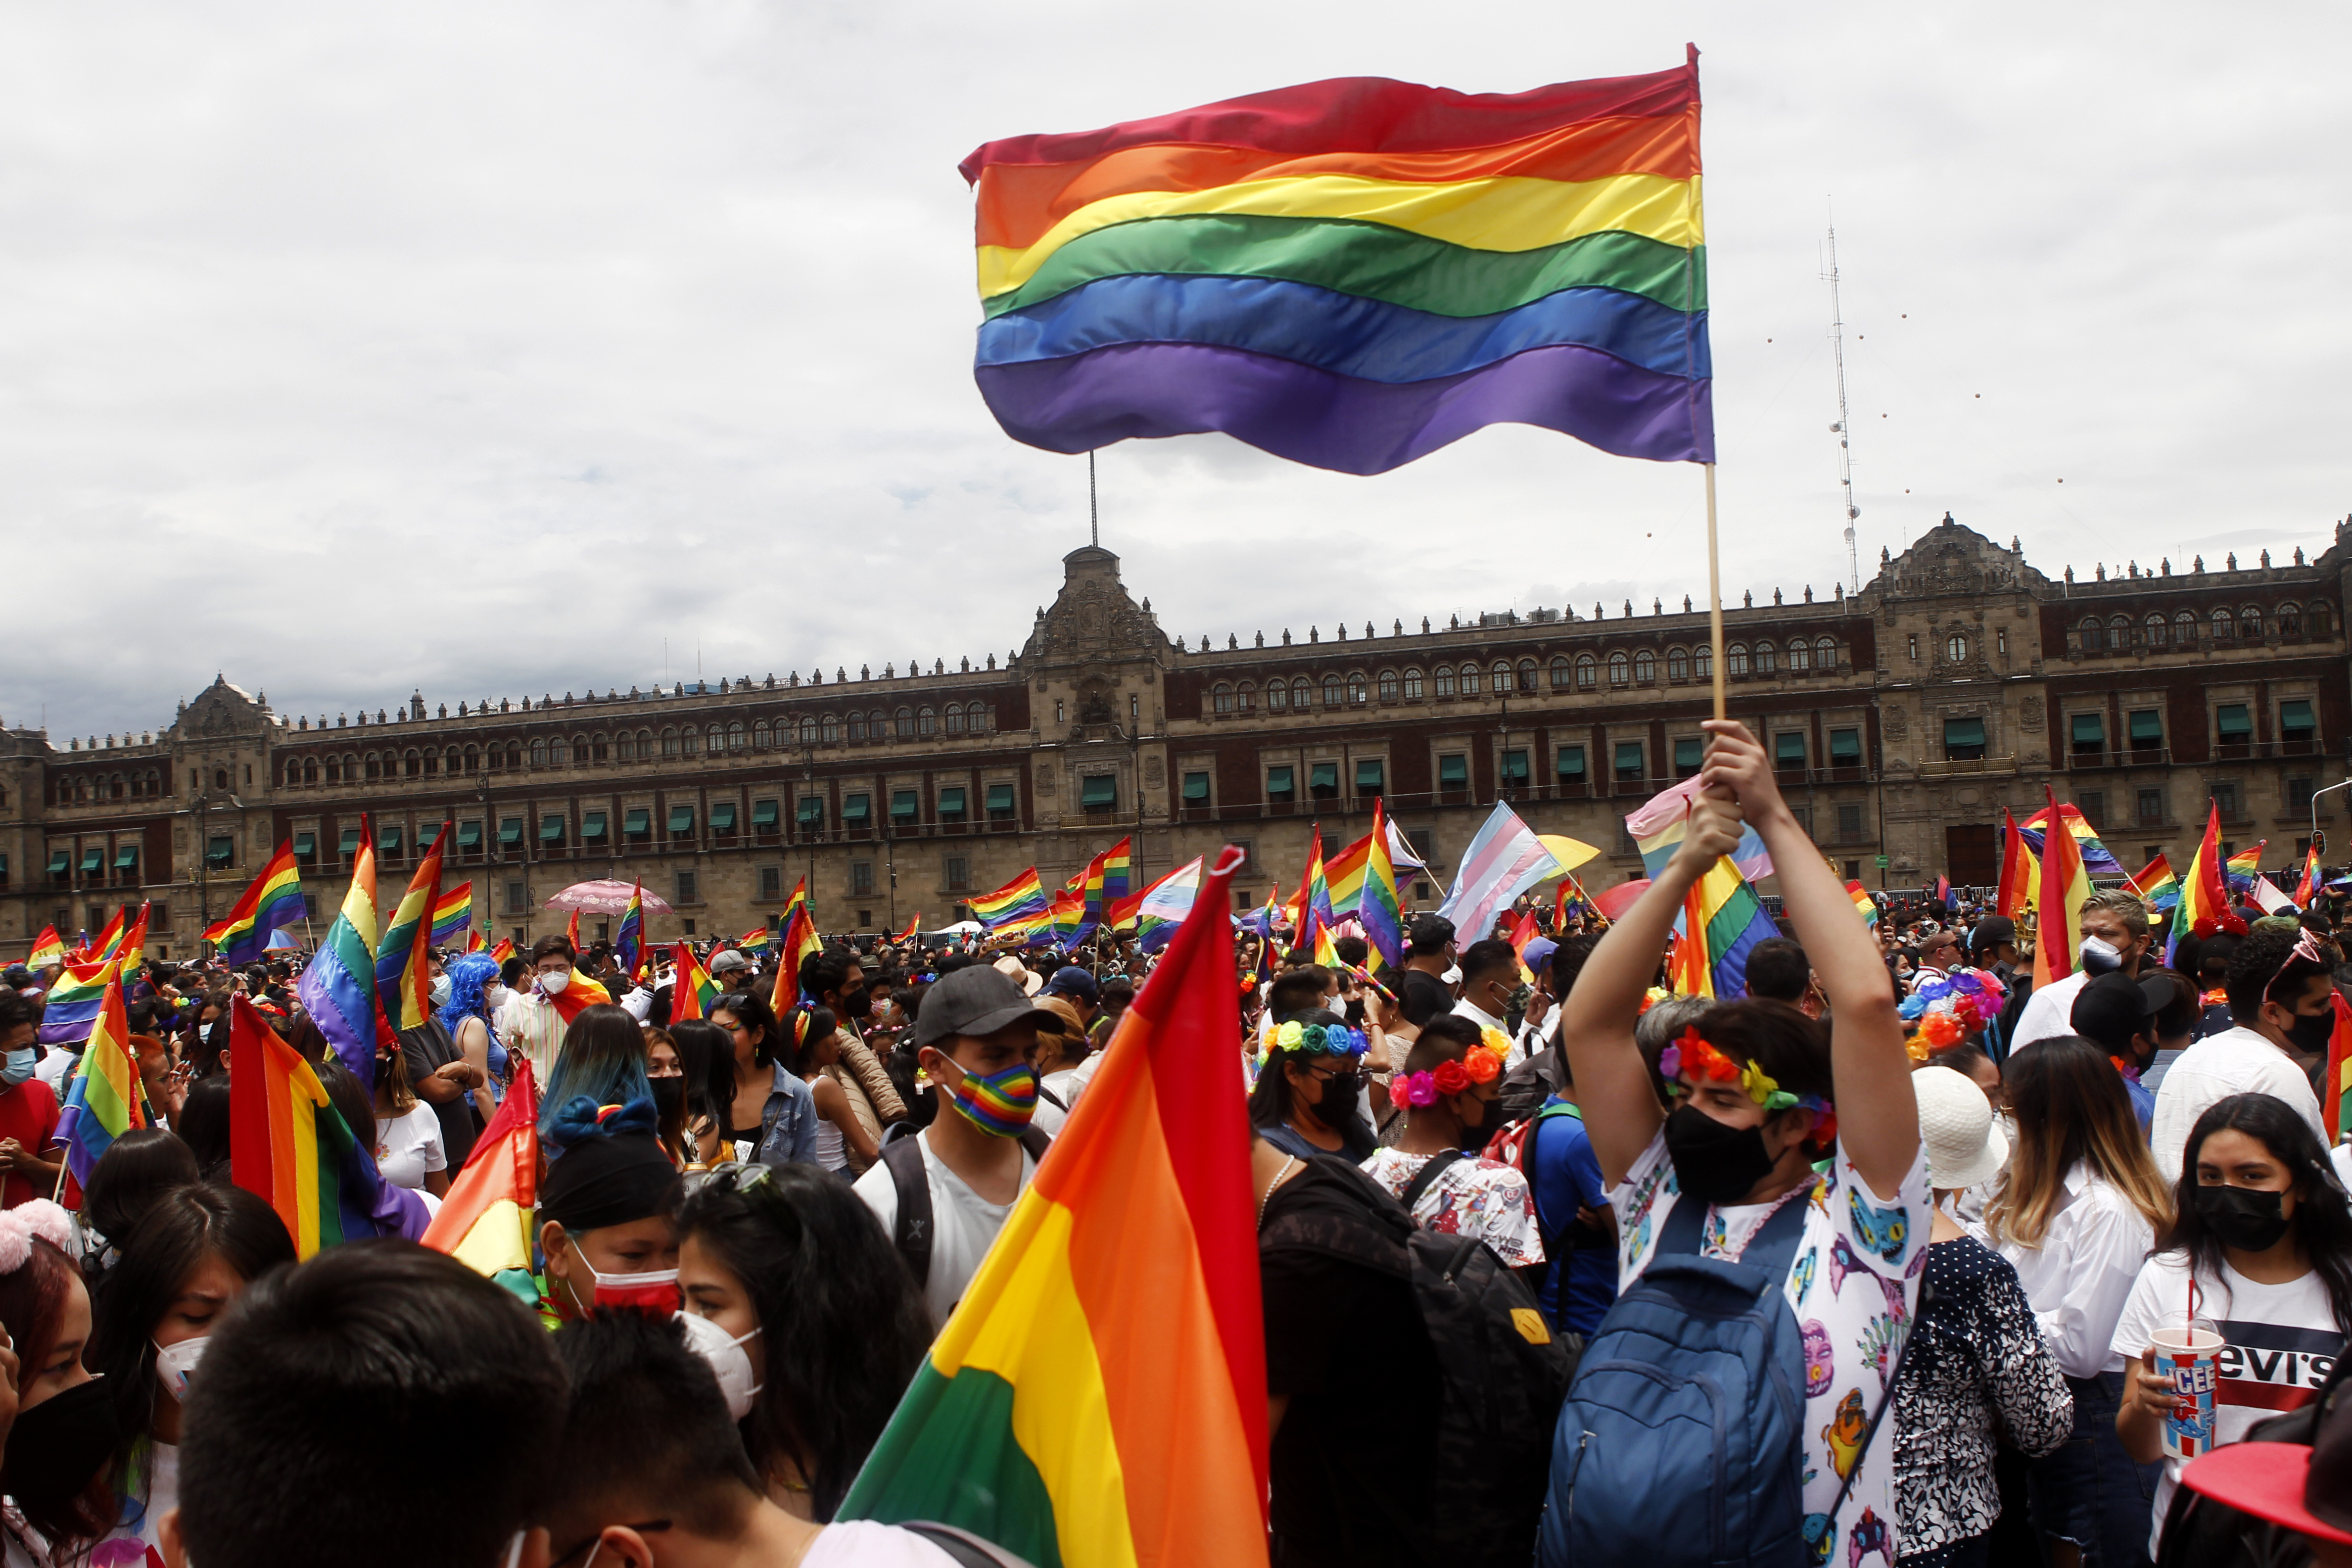 Marcha del Orgullo LGBTTTIQ en Ciudad de México. Junio 2021
Foto: Karina Herández / Infobae